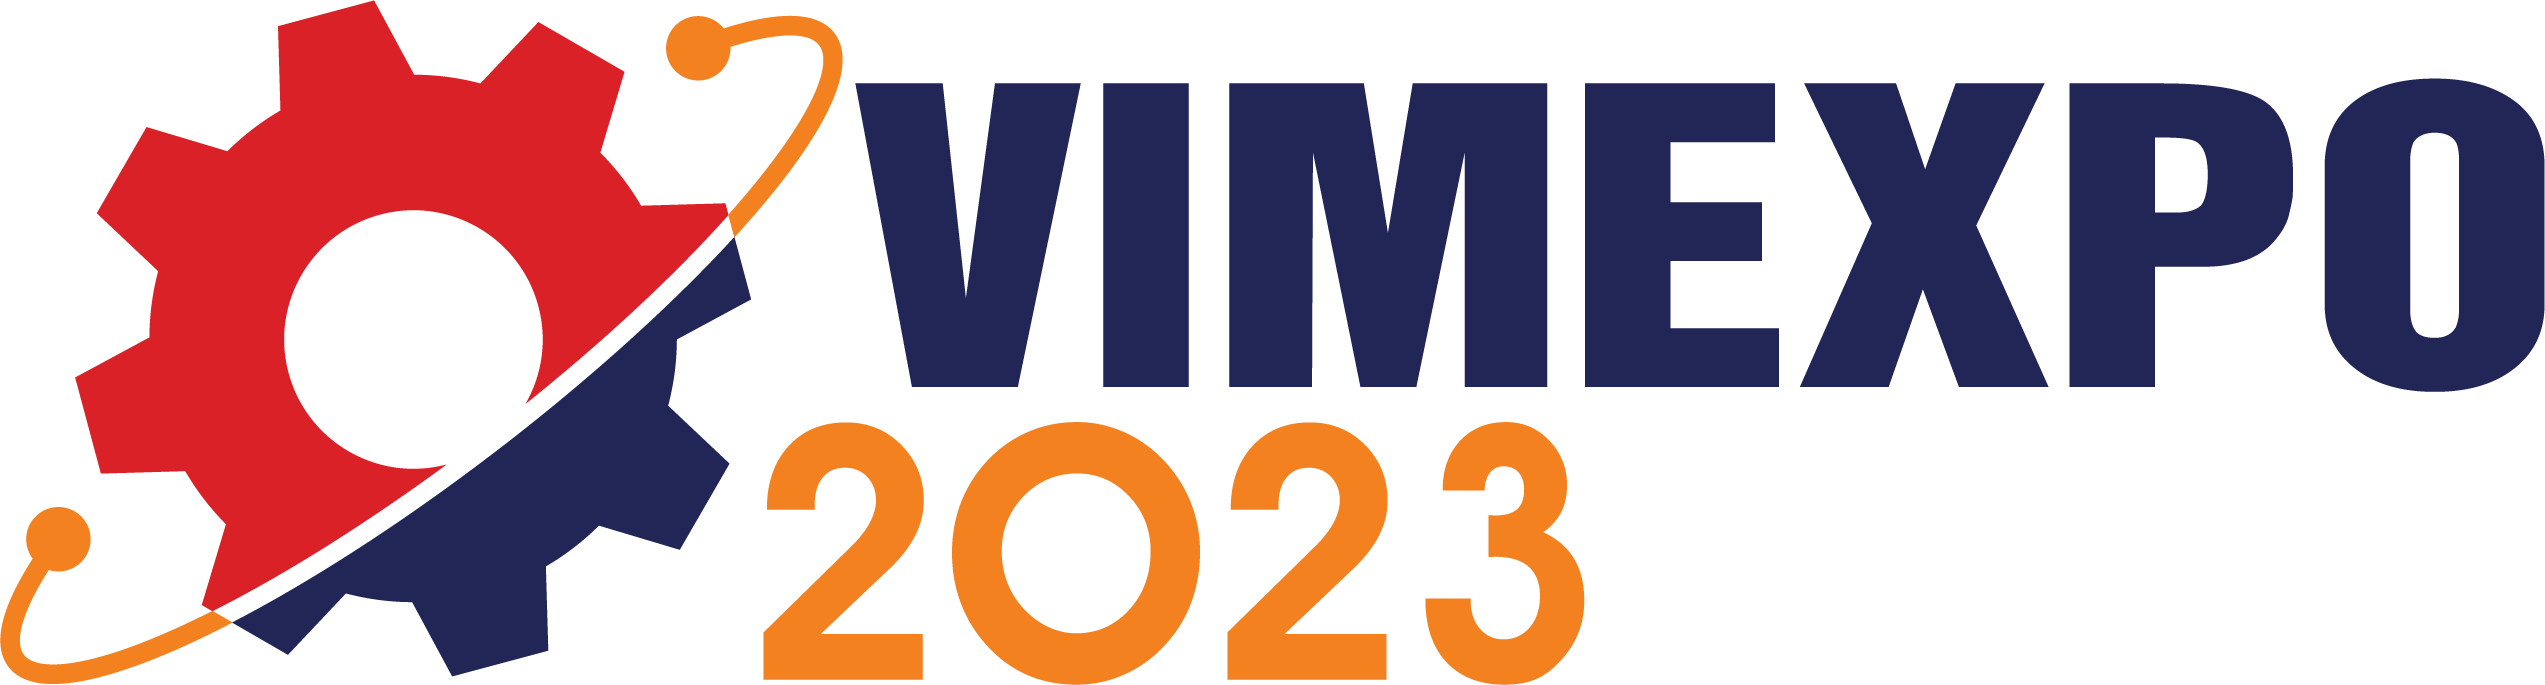 VIMEXPO 2022 - Triển lãm trực tuyến